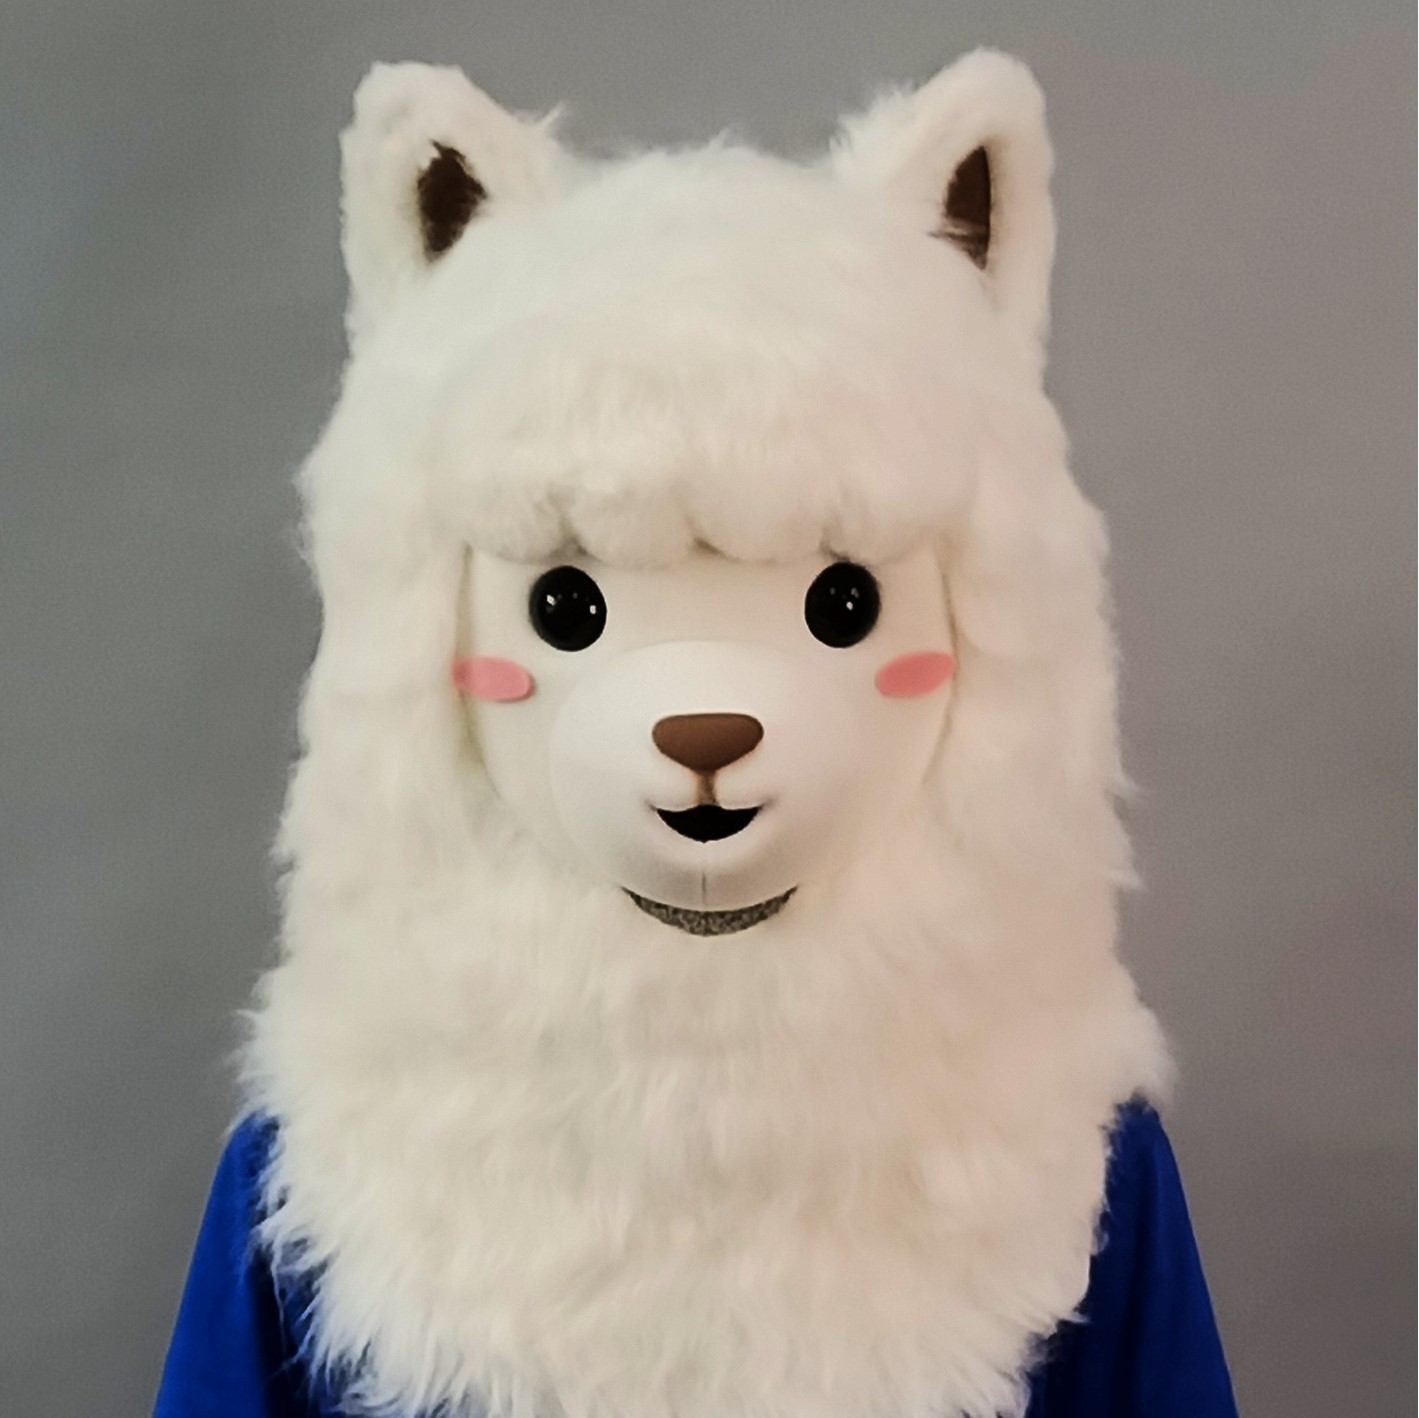 魔人社2021羊駝面具頭套製作 Alpaca mask